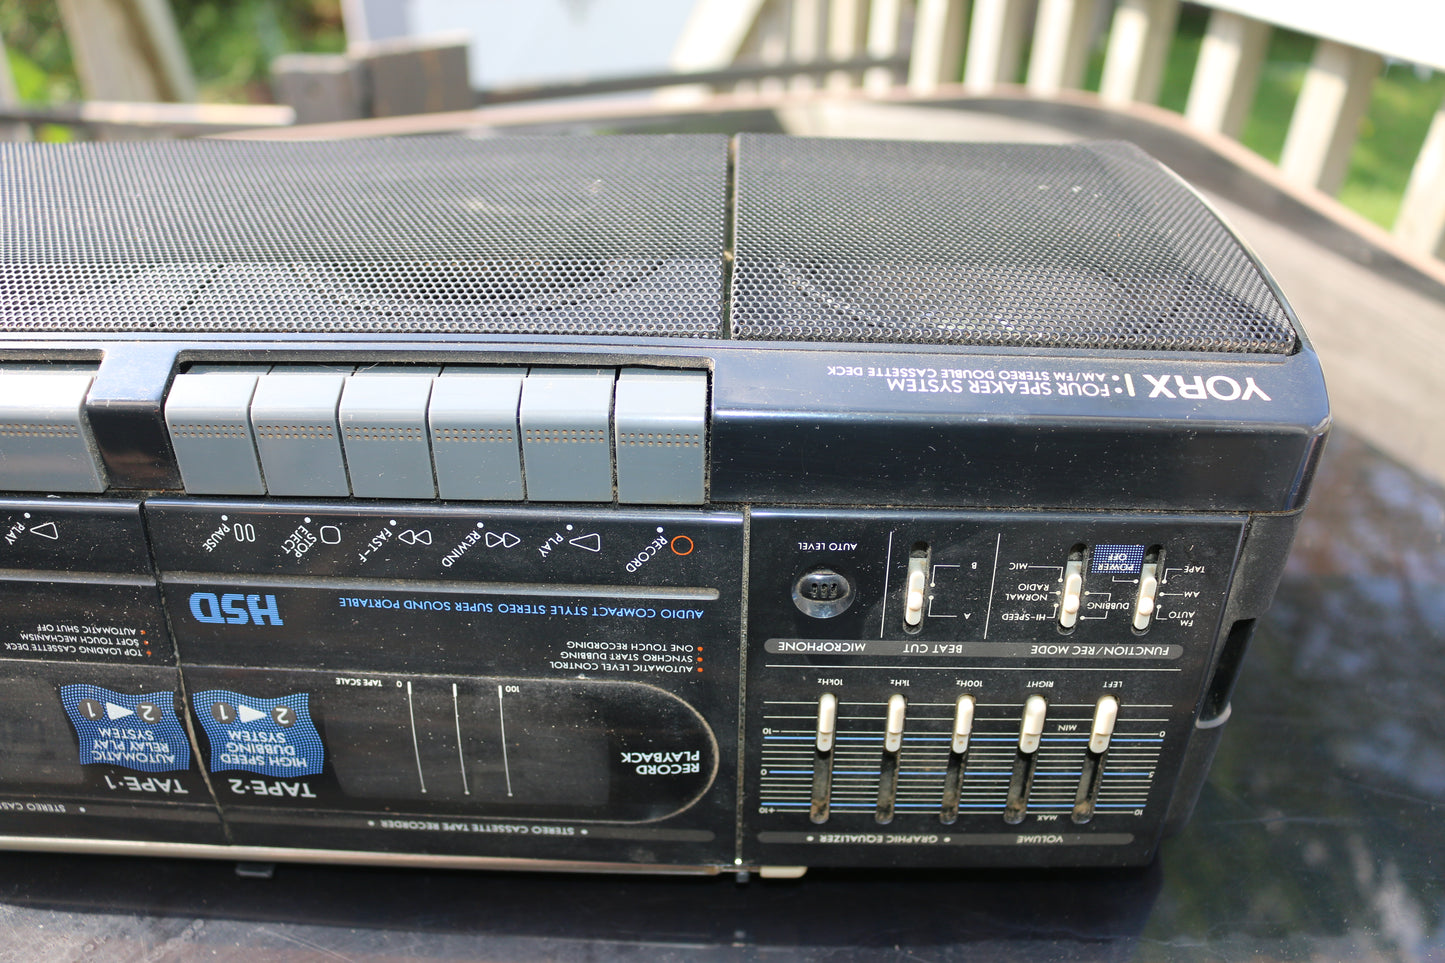 yorx super sounds newave Model No.P1215 portable radio double deck